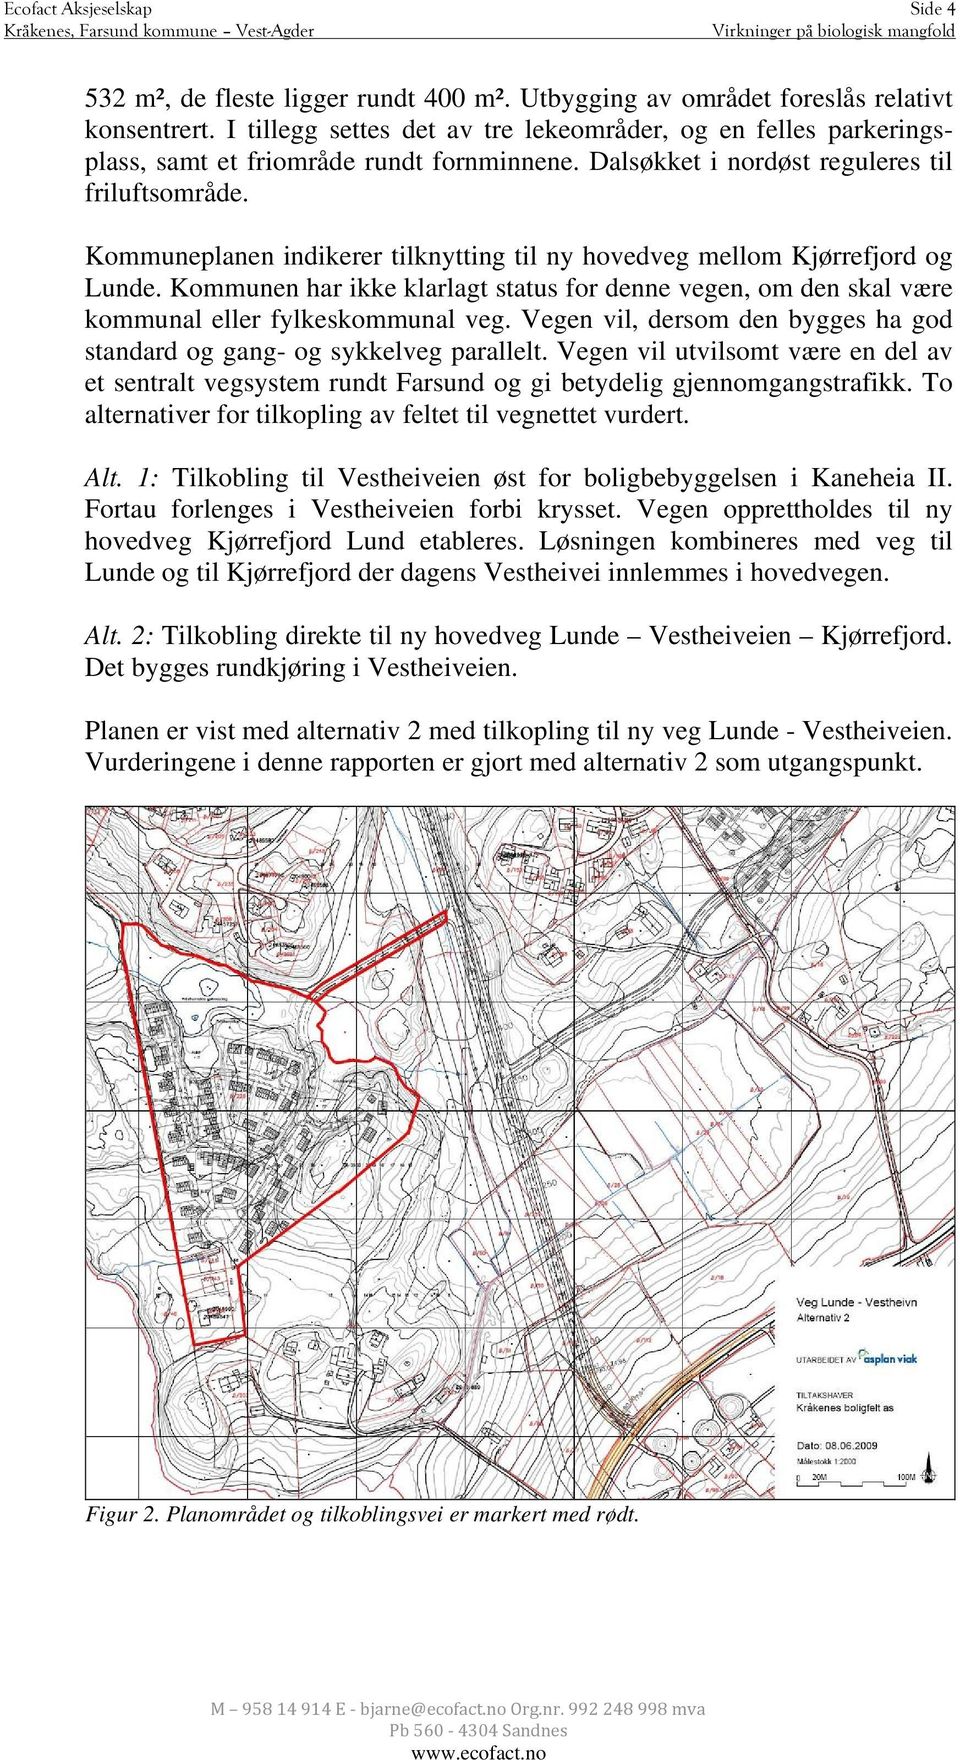 Kommuneplanen indikerer tilknytting til ny hovedveg mellom Kjørrefjord og Lunde. Kommunen har ikke klarlagt status for denne vegen, om den skal være kommunal eller fylkeskommunal veg.